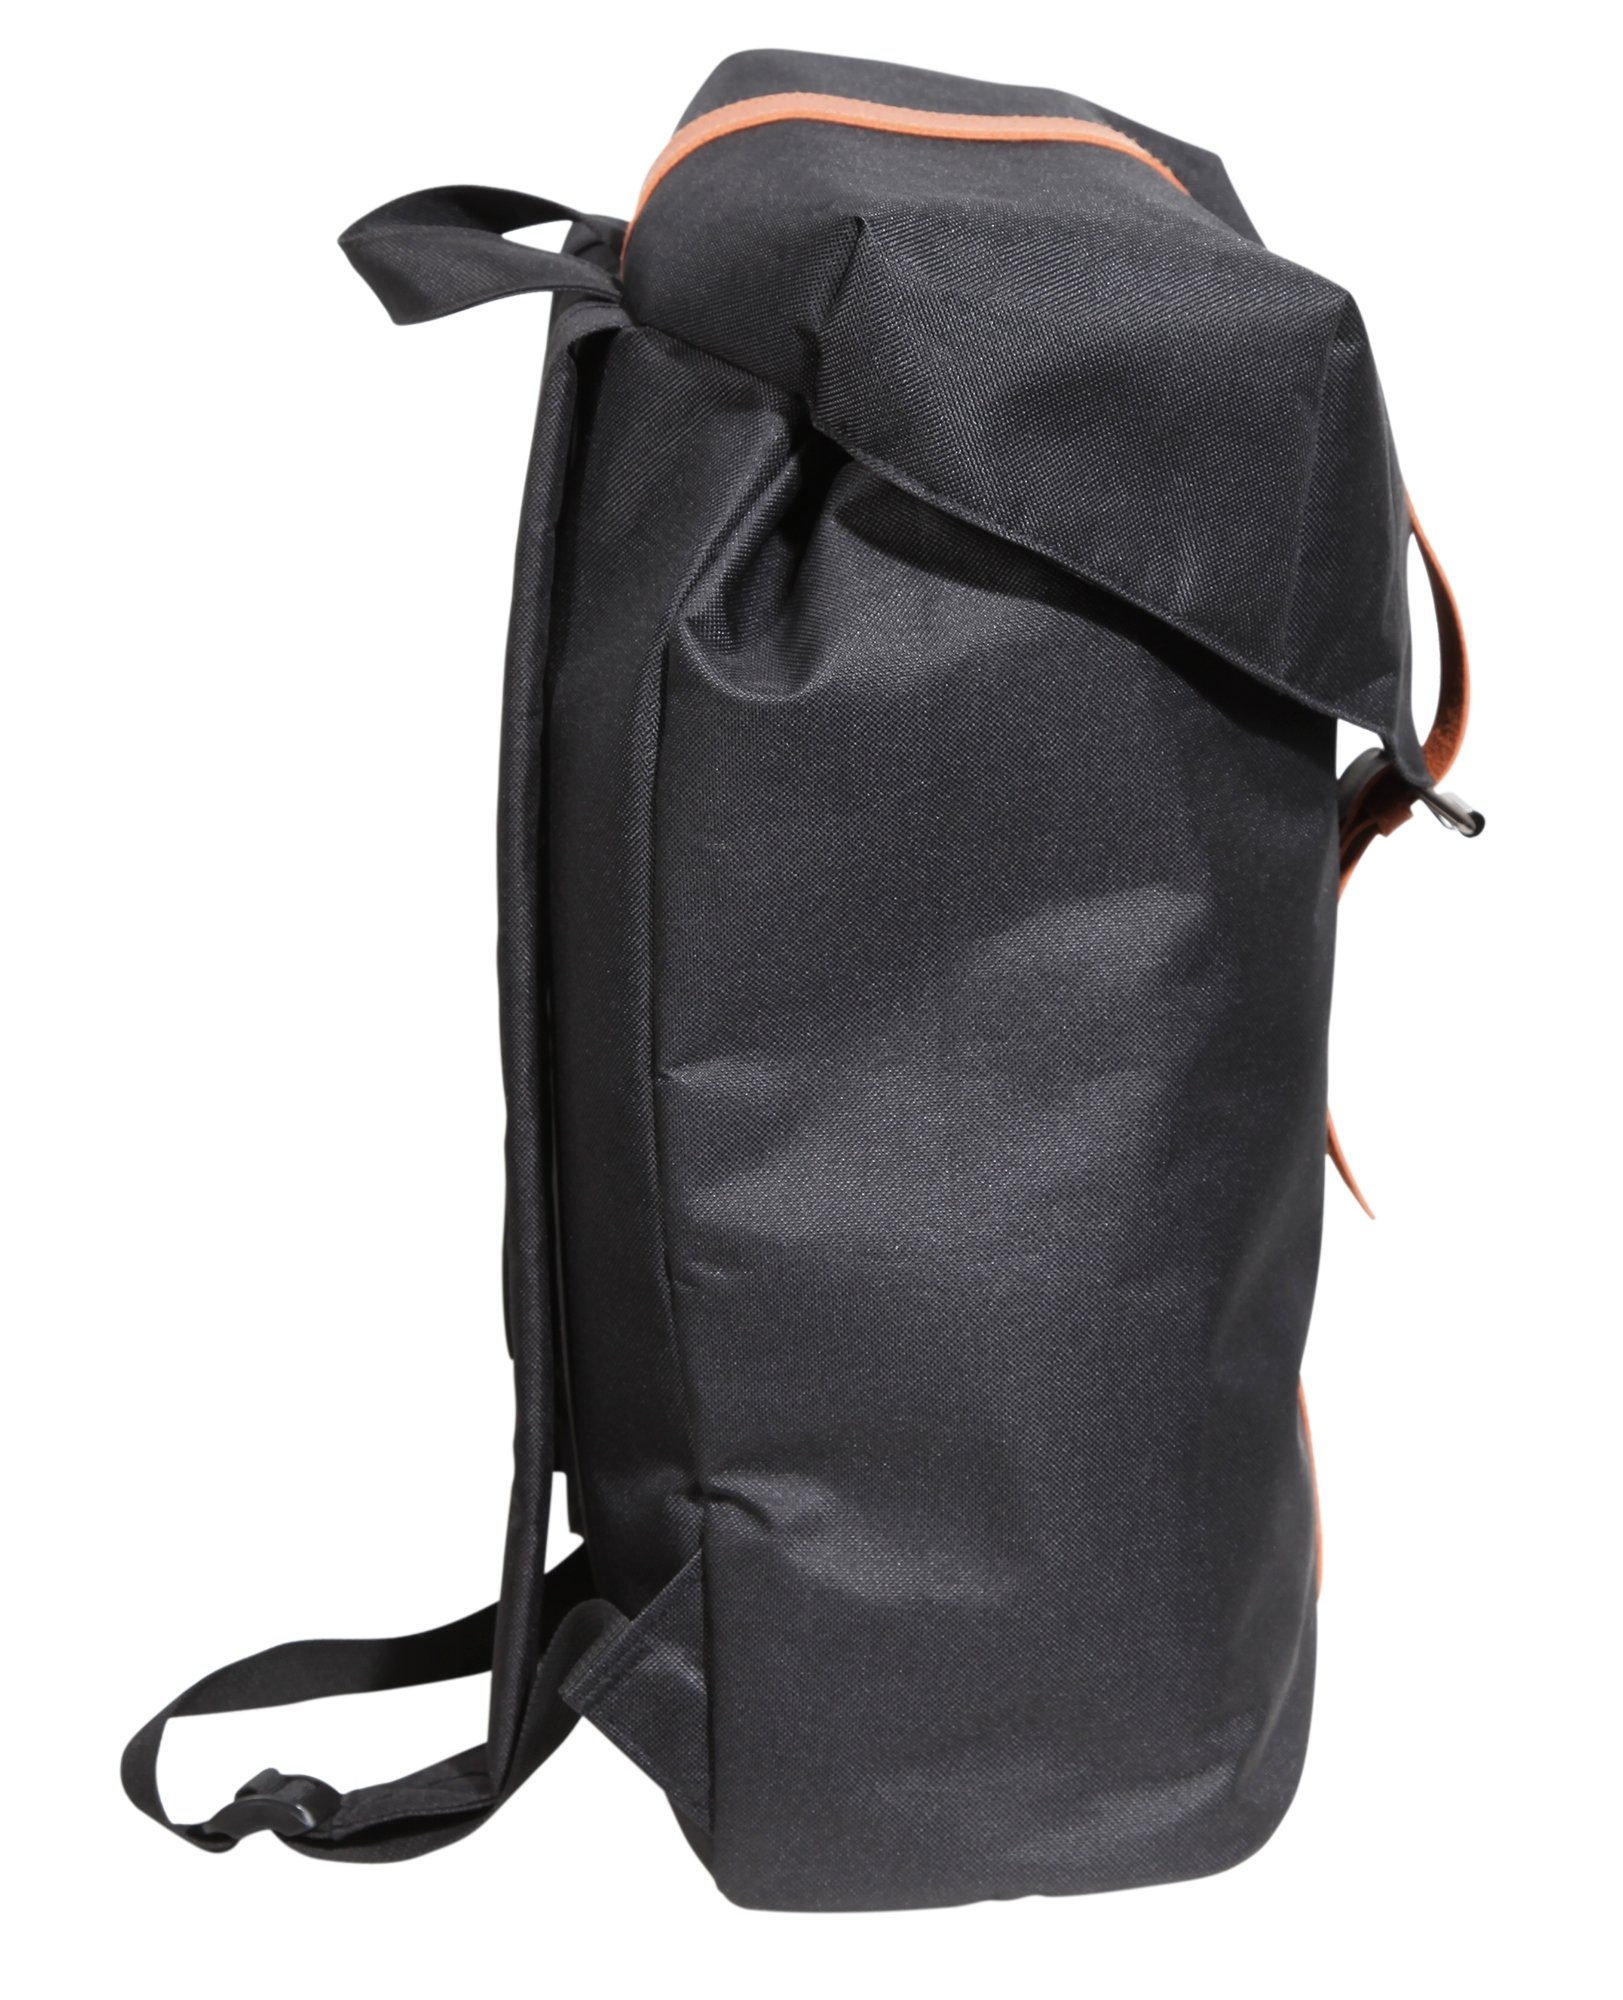 LEONARDO VERRELLI (einzeln) Polyester Unisex Rucksack Laptoptasche Laptopfach Tasche Schwarz mit aus Melli